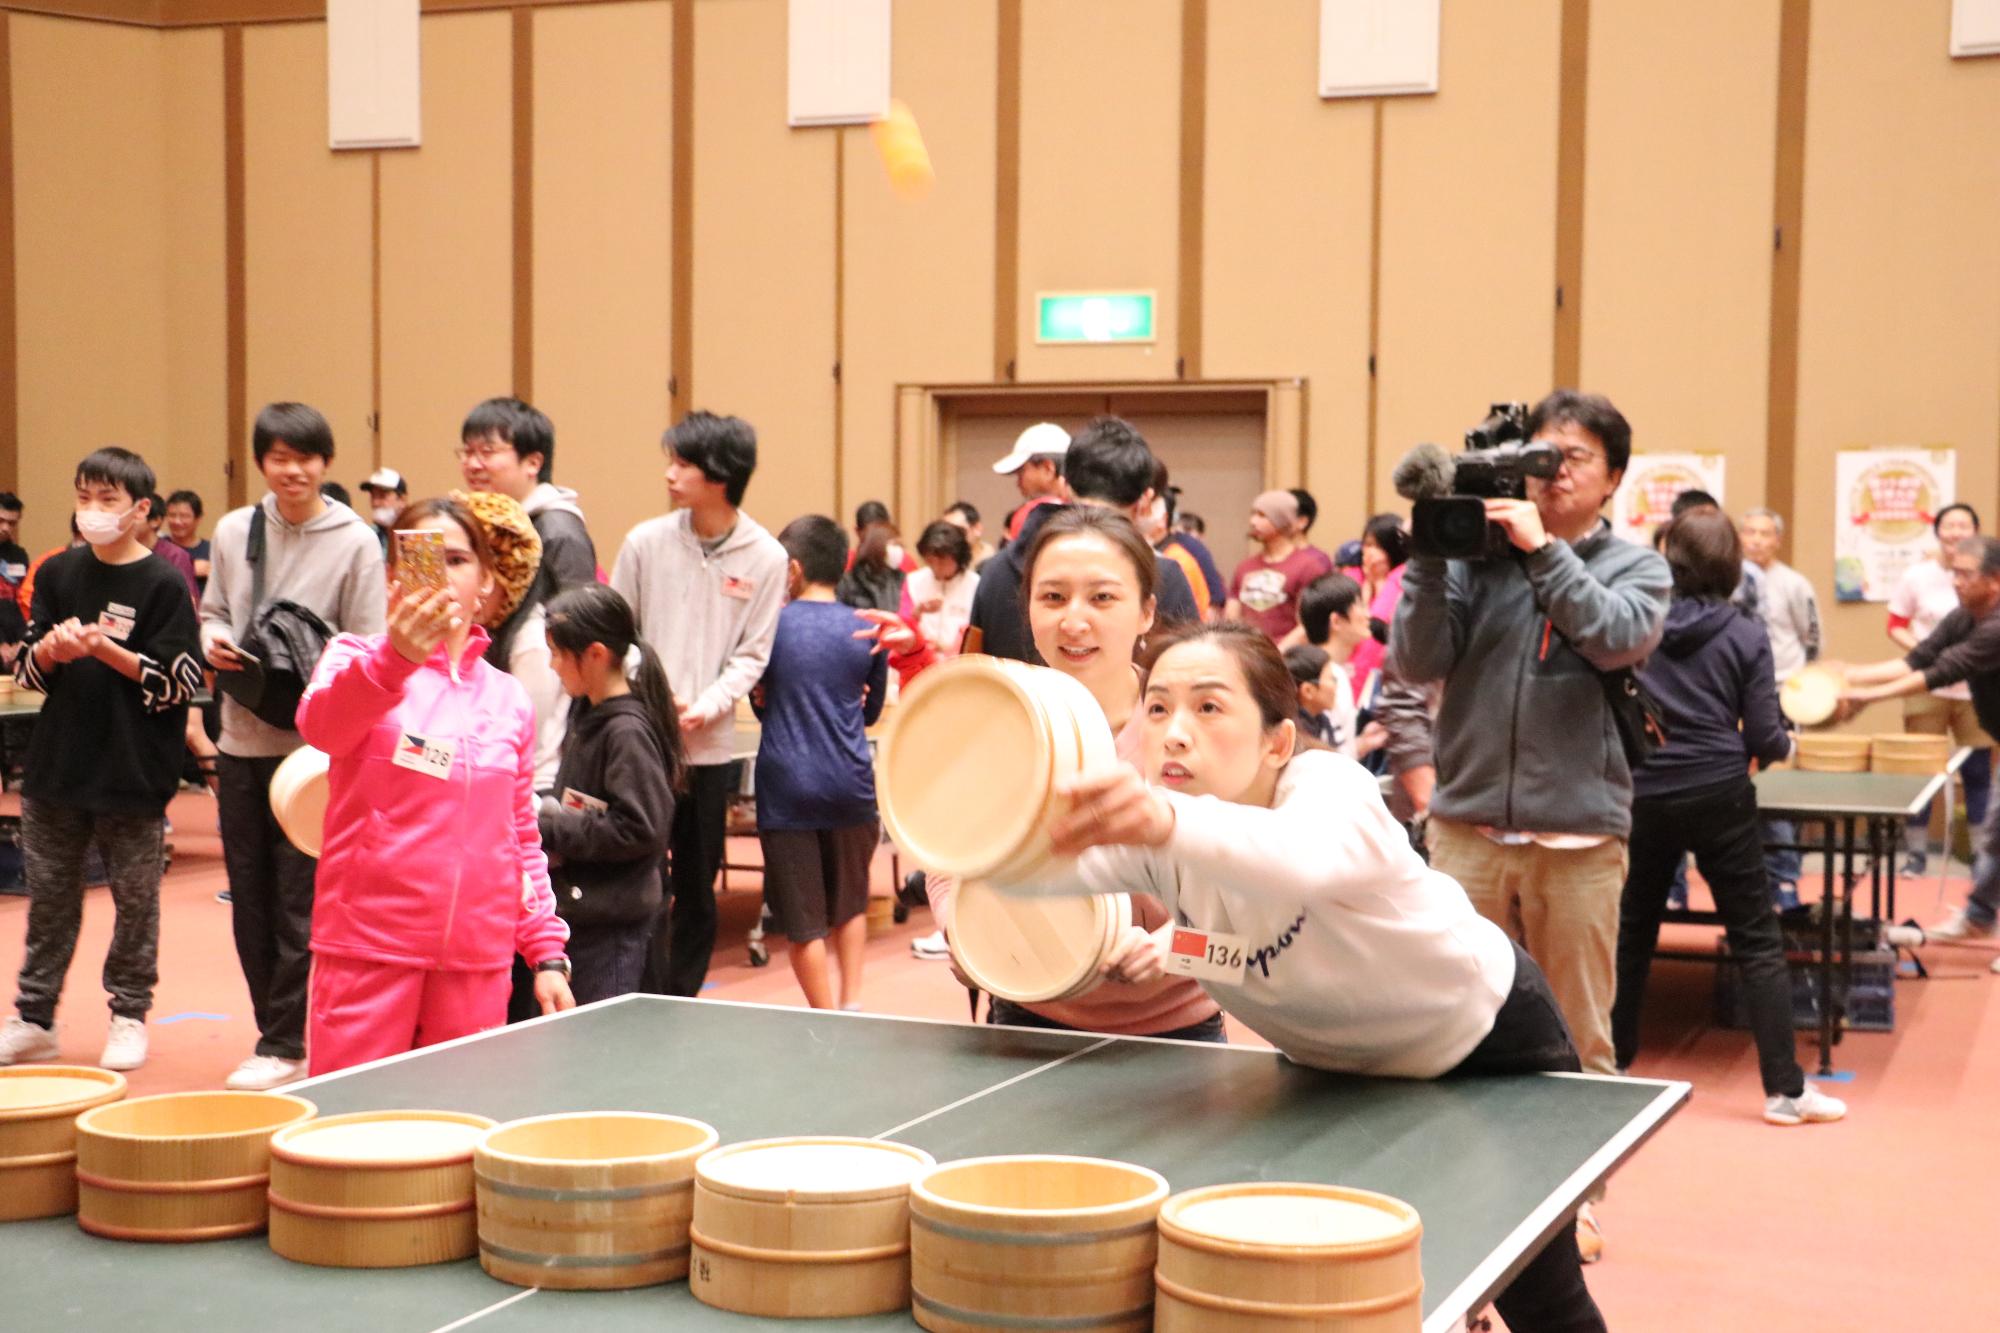 中国出身の女性のペアのうちの1人が、大きく体を前にして桶を突き出し、ピンポン玉を打った写真